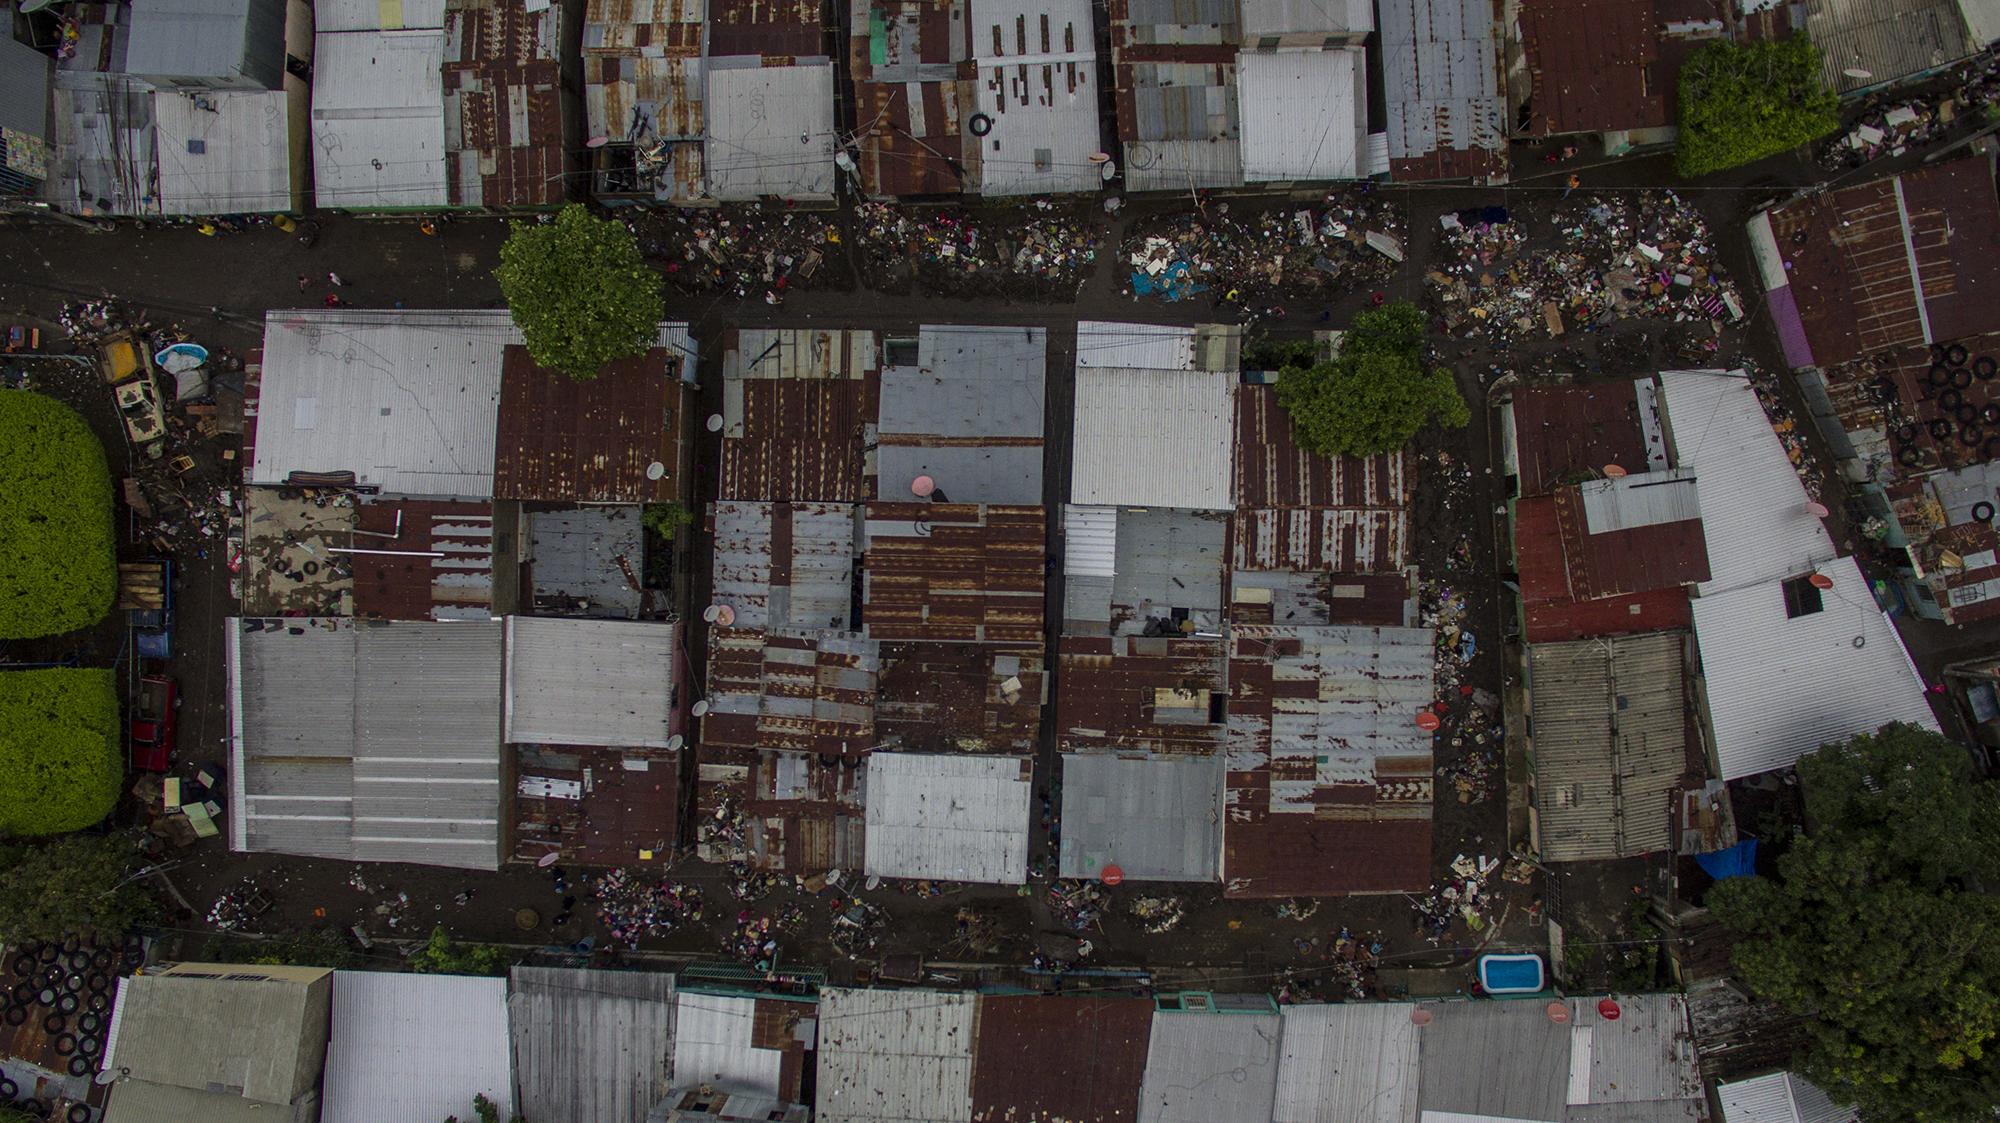 El Granjero II es una aglomeración de 135 viviendas en la ribera del río Acelhuate, al oriente de San Salvador. Colinda con otras dos comunidades vulnerables: la Chacra y la Quiñónez. Foto tomada desde el aire con un dron. Foto de El Faro: Víctor Peña.